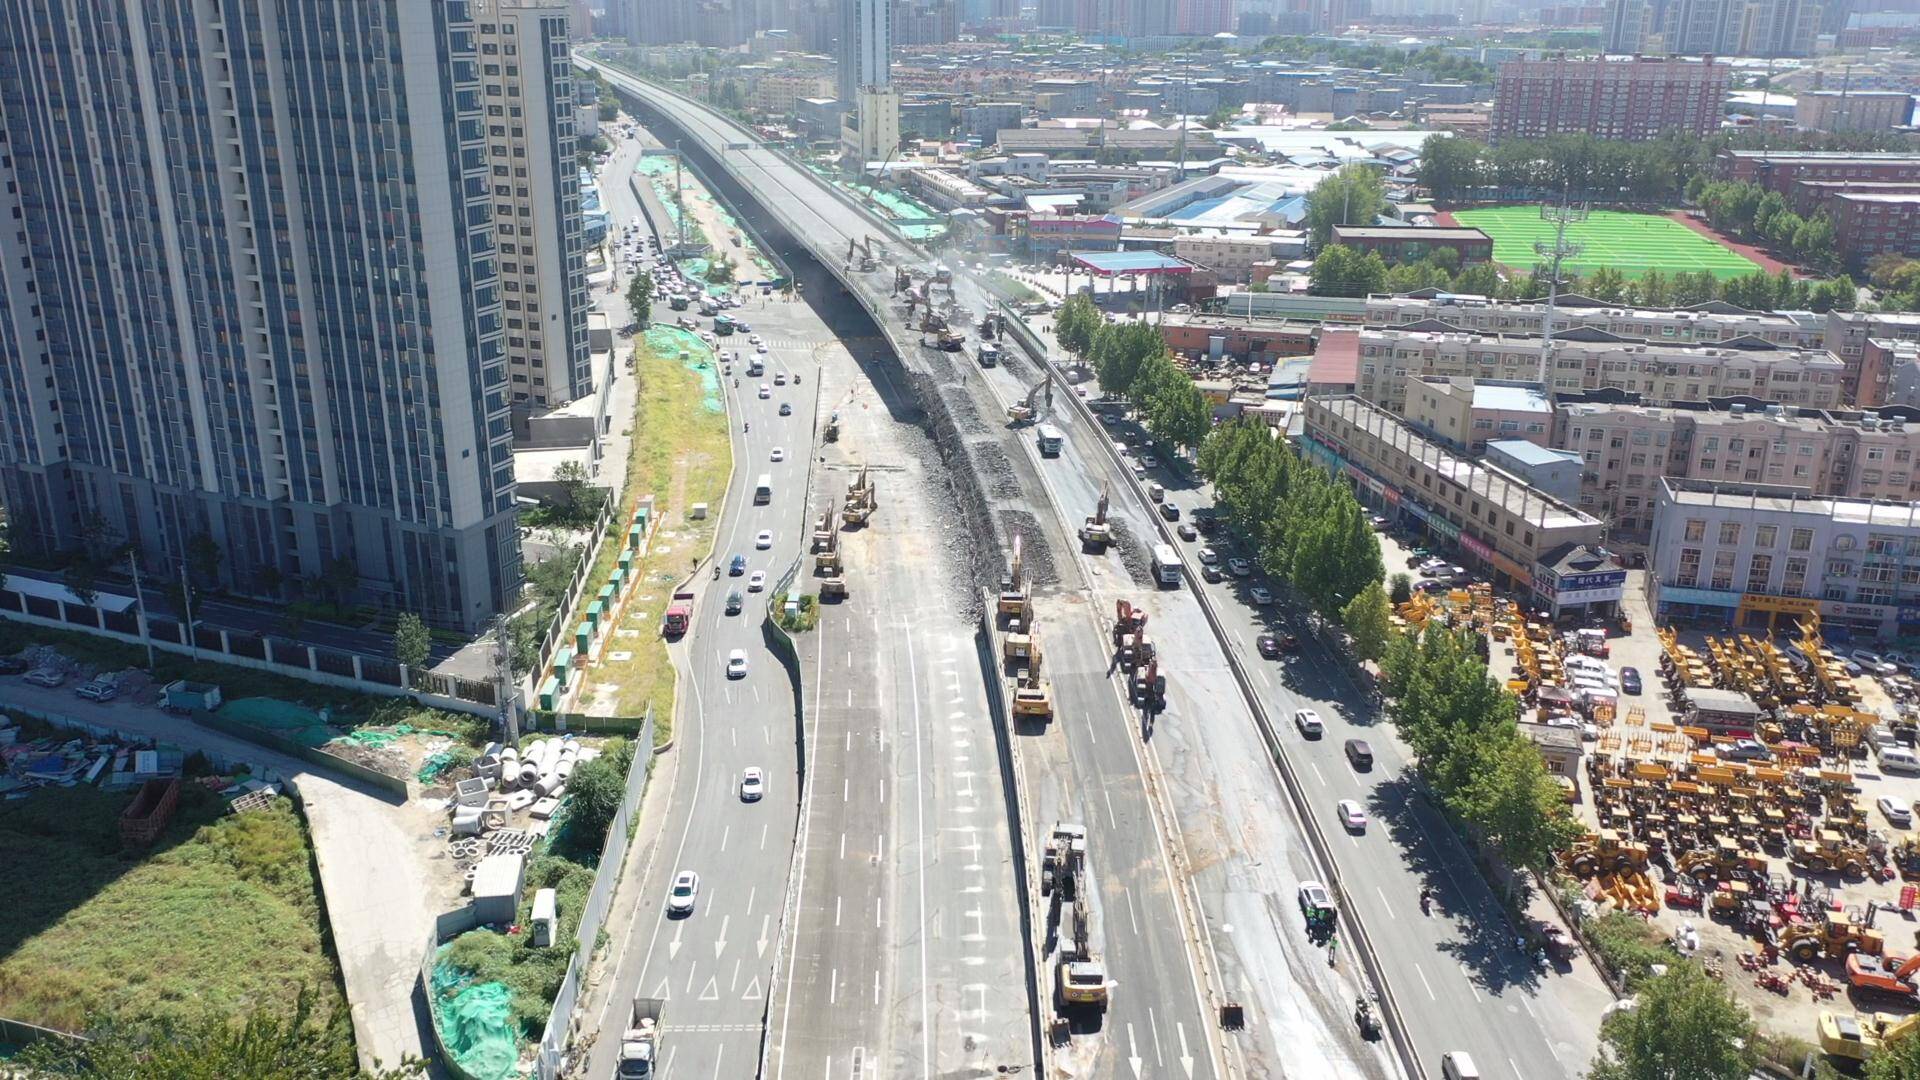 9月23日22点至24日6点 济南二环东路高架路北段(济华路至将军路段)桥体将拆除